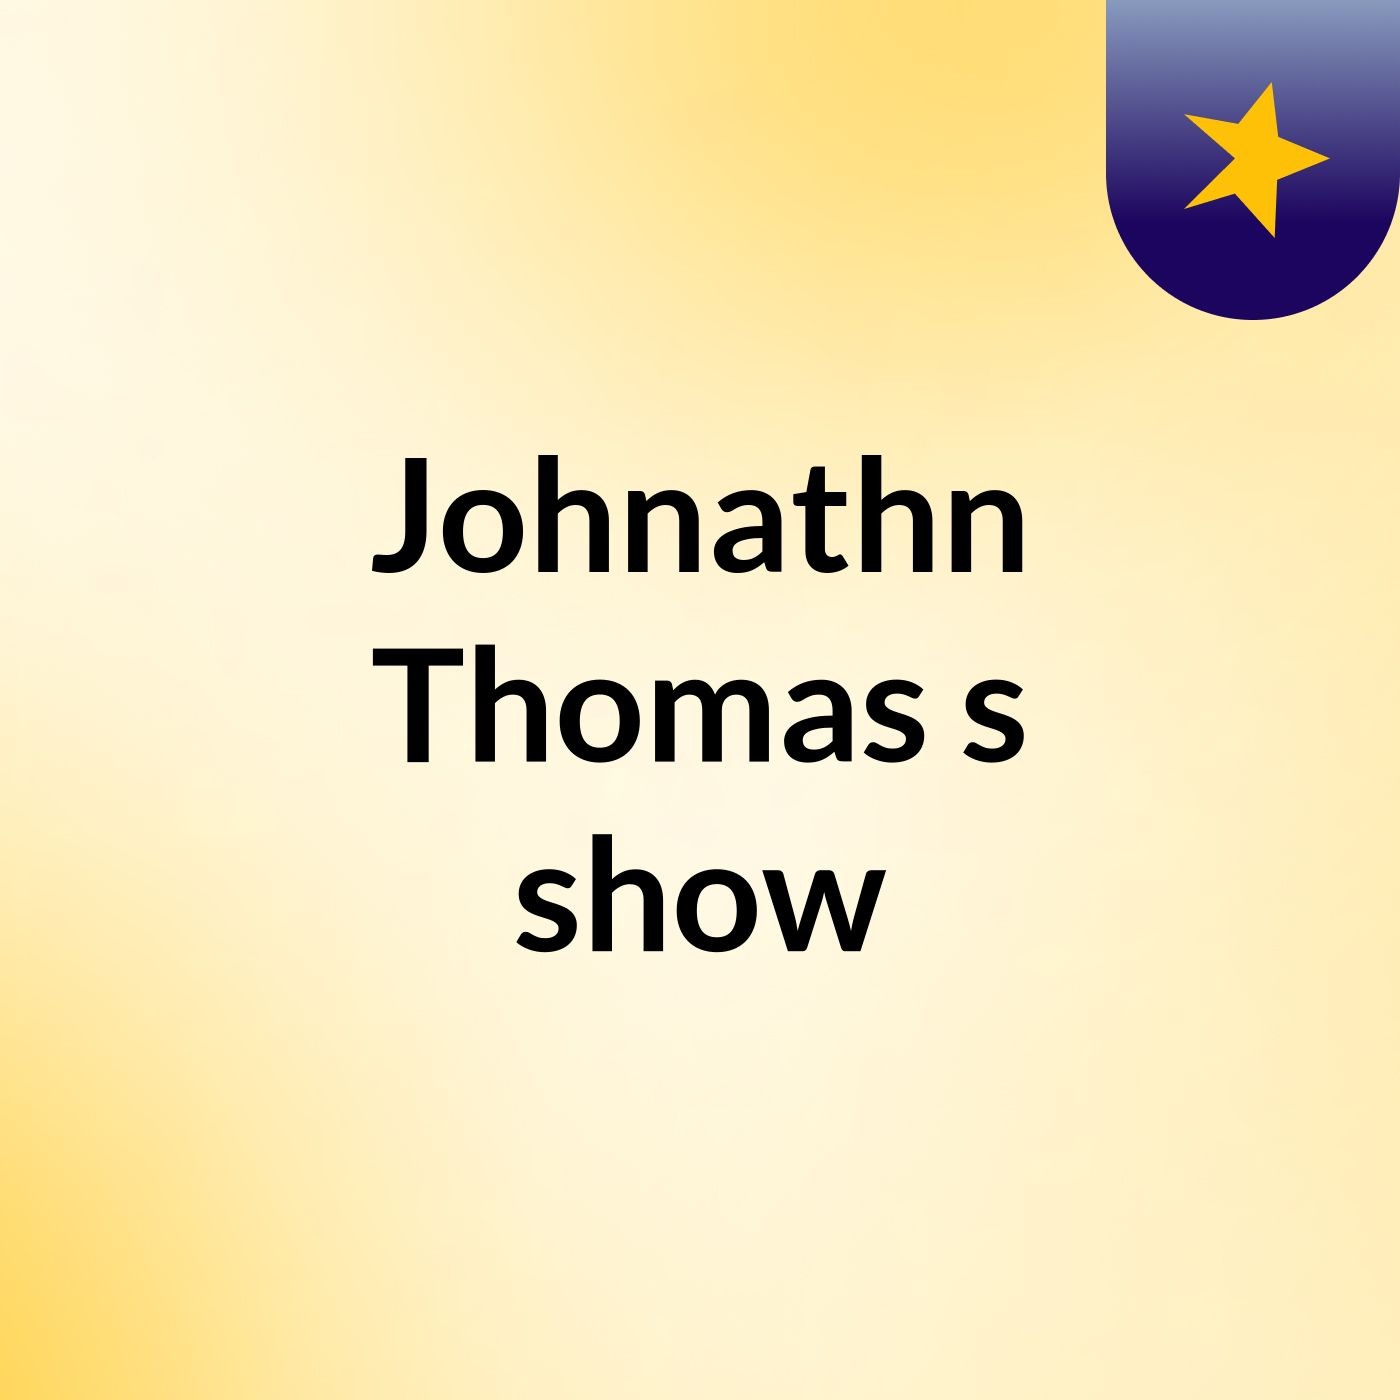 Johnathn Thomas's show